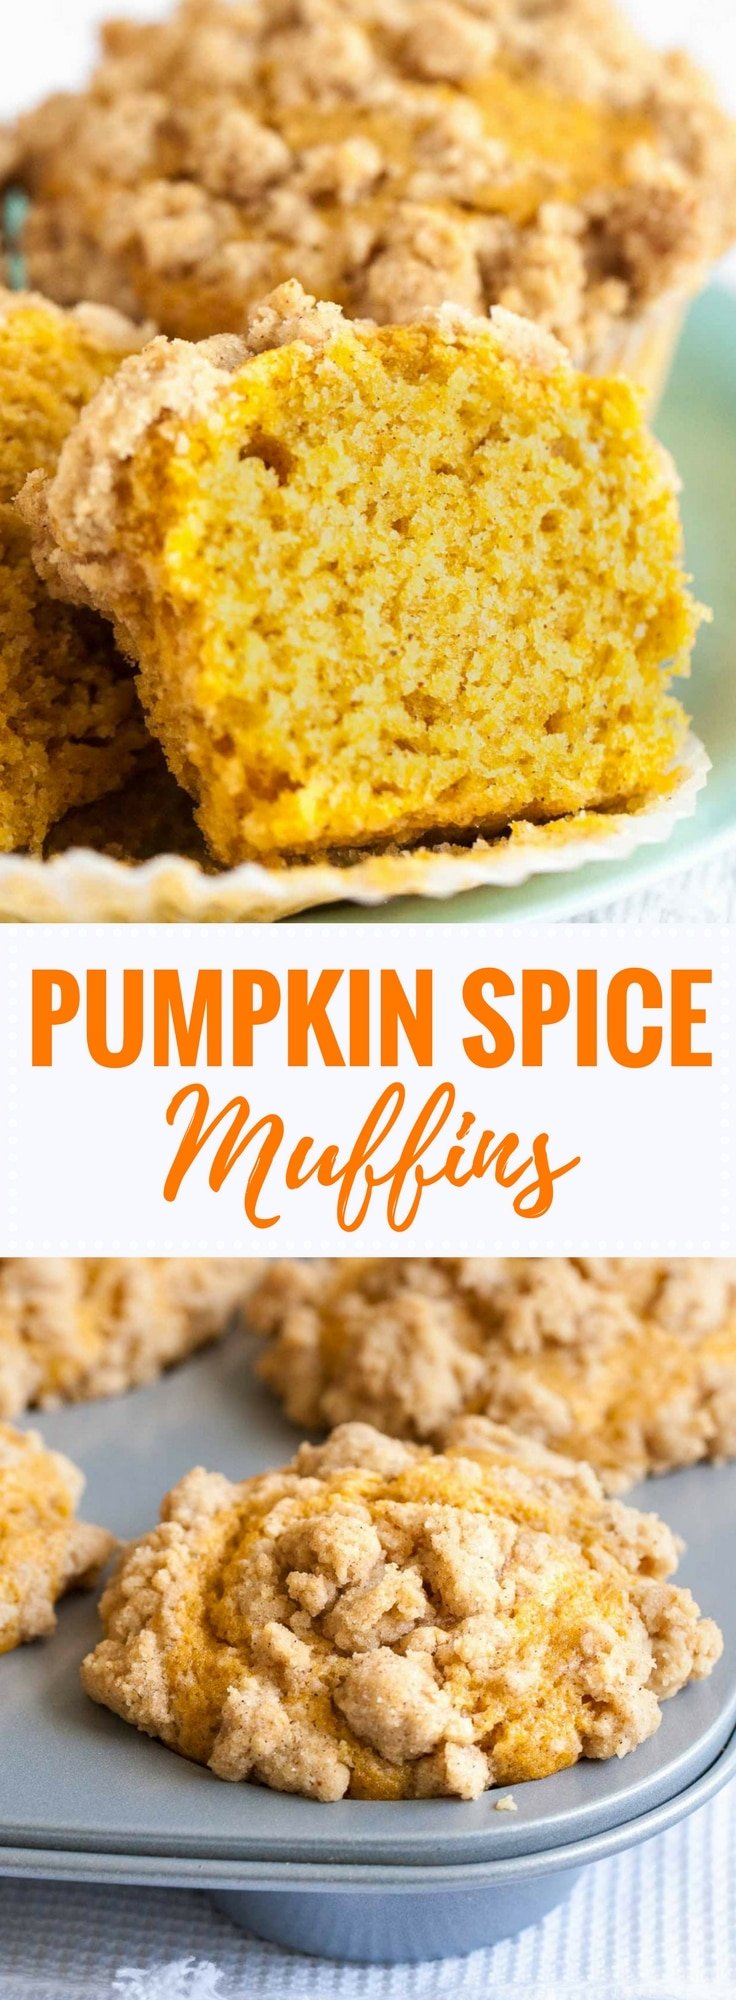 Easy Pumpkin Spice Muffins Recipe